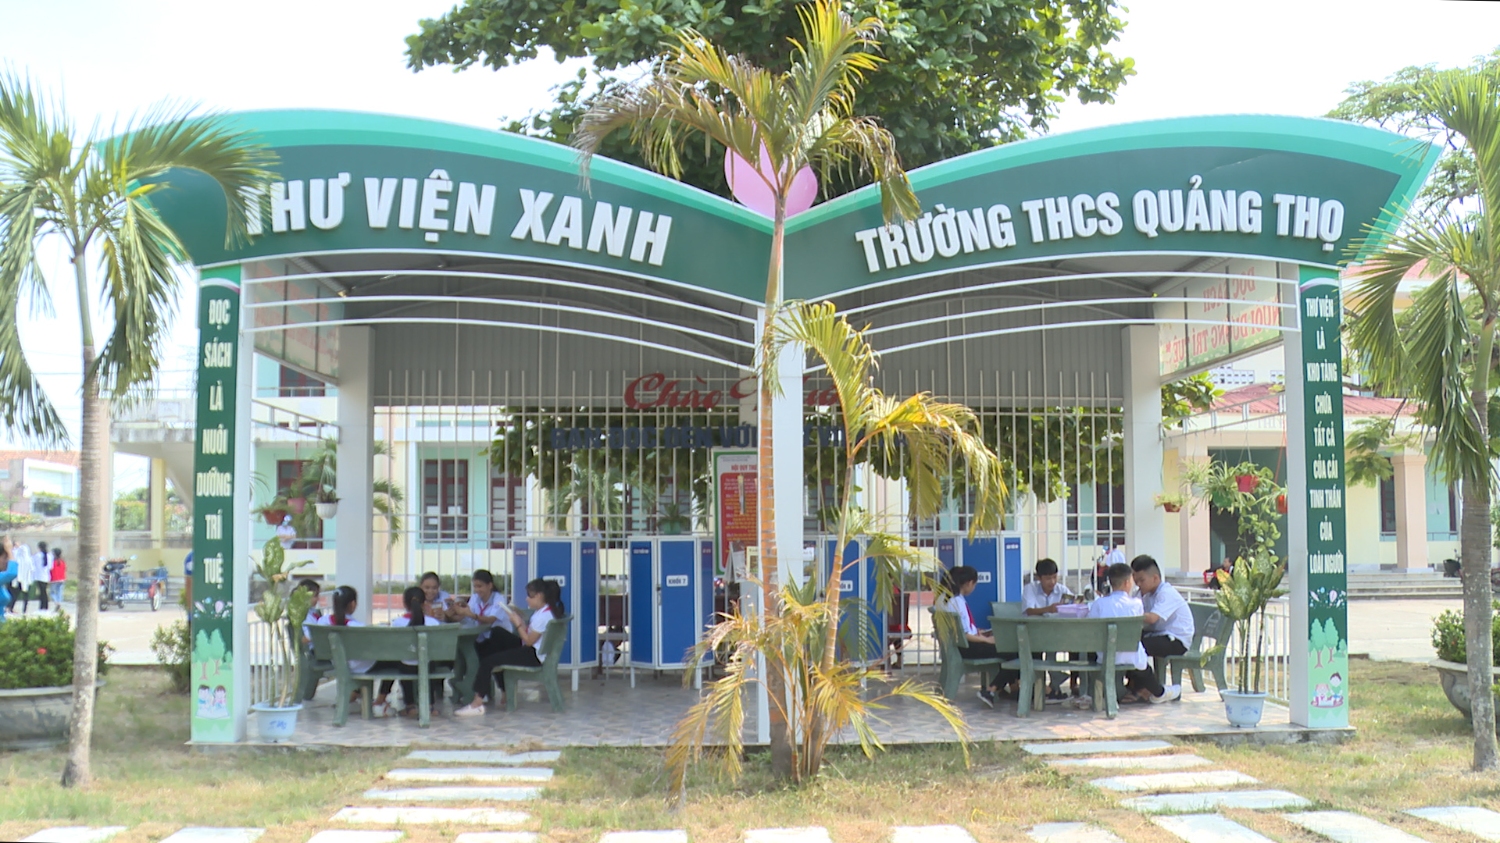 Mô hình thư viên xanh tại trường THCS Quảng Thọ